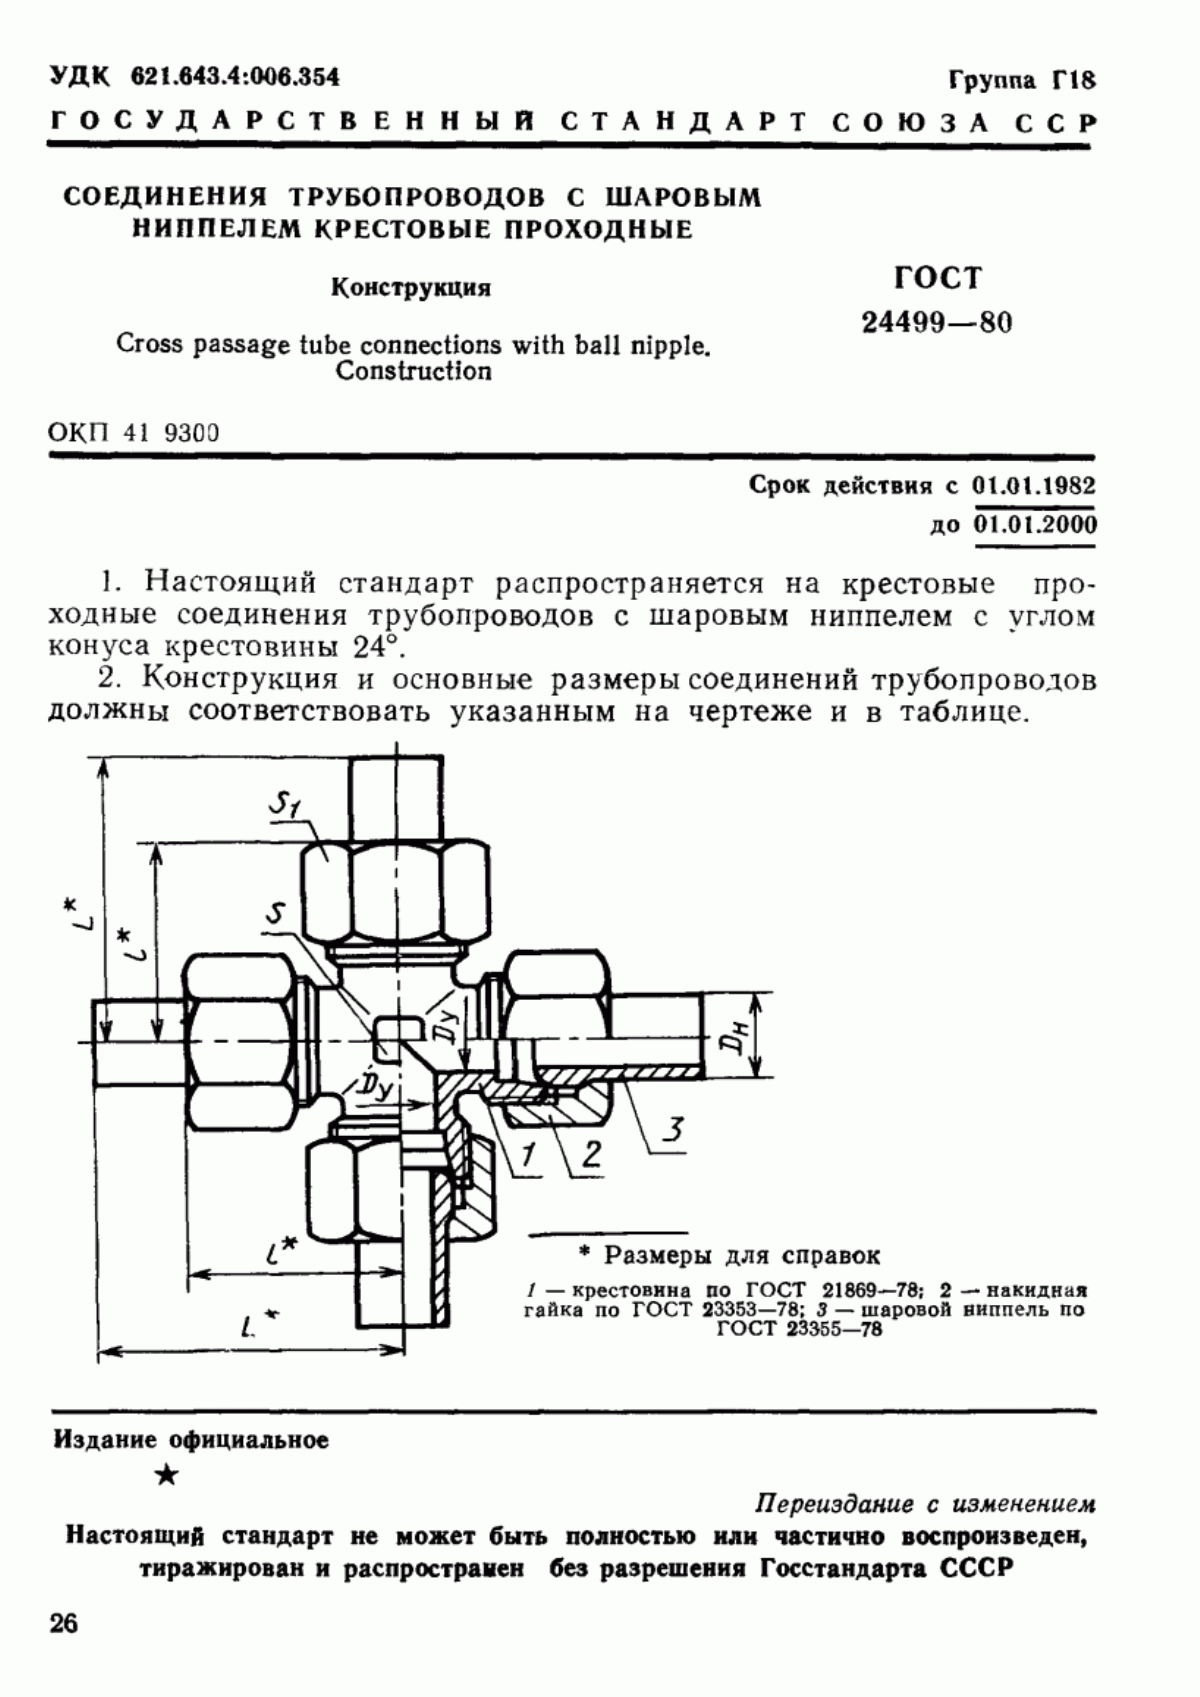 ГОСТ 24499-80 Соединения трубопроводов с шаровым ниппелем крестовые проходные. Конструкция